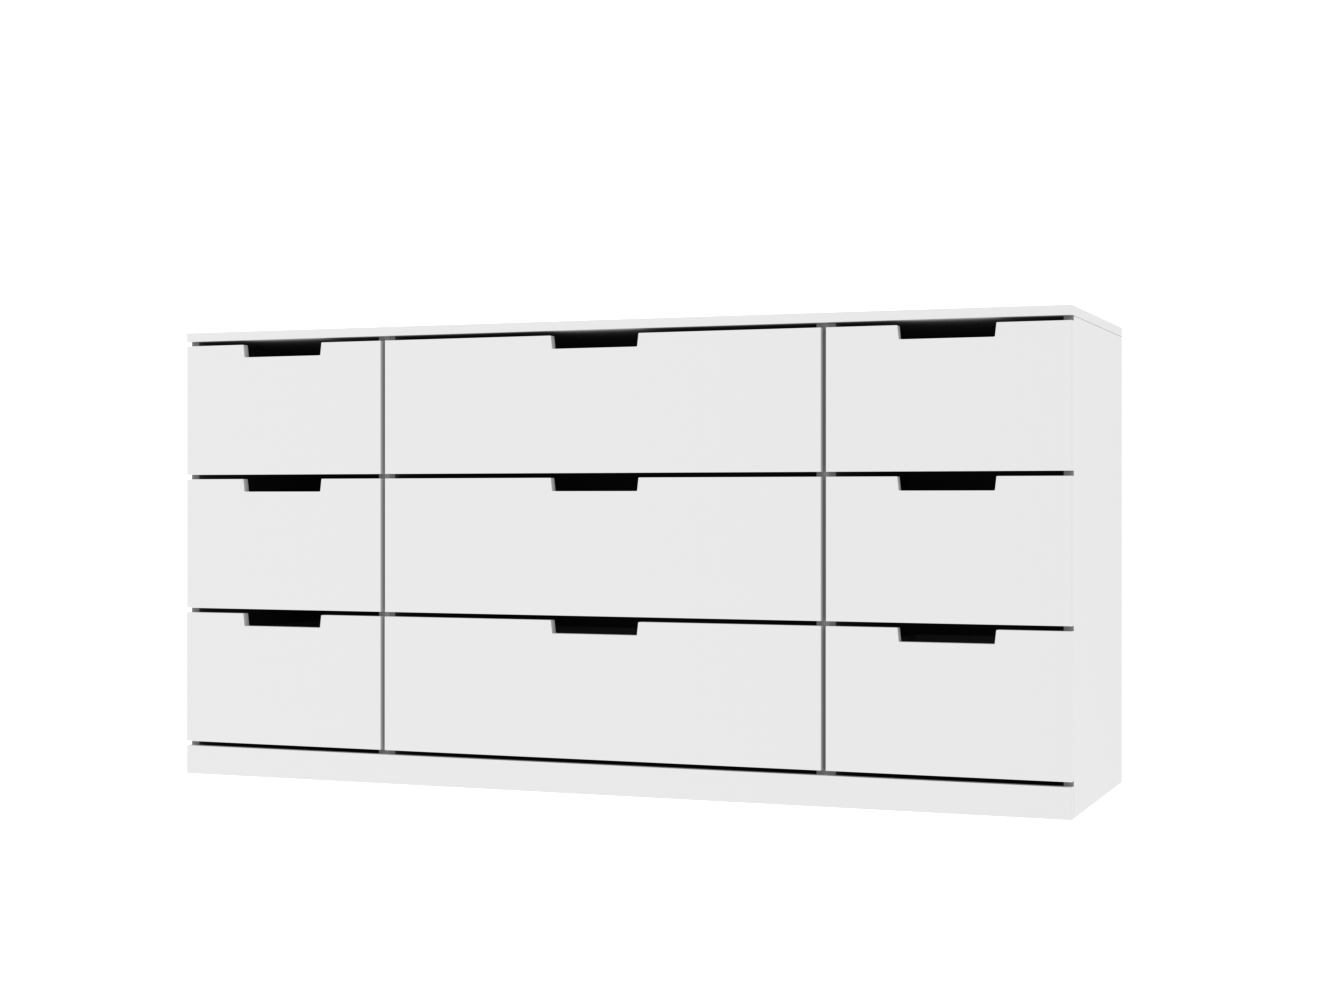  Комод Нордли 25 white ИКЕА (IKEA) изображение товара